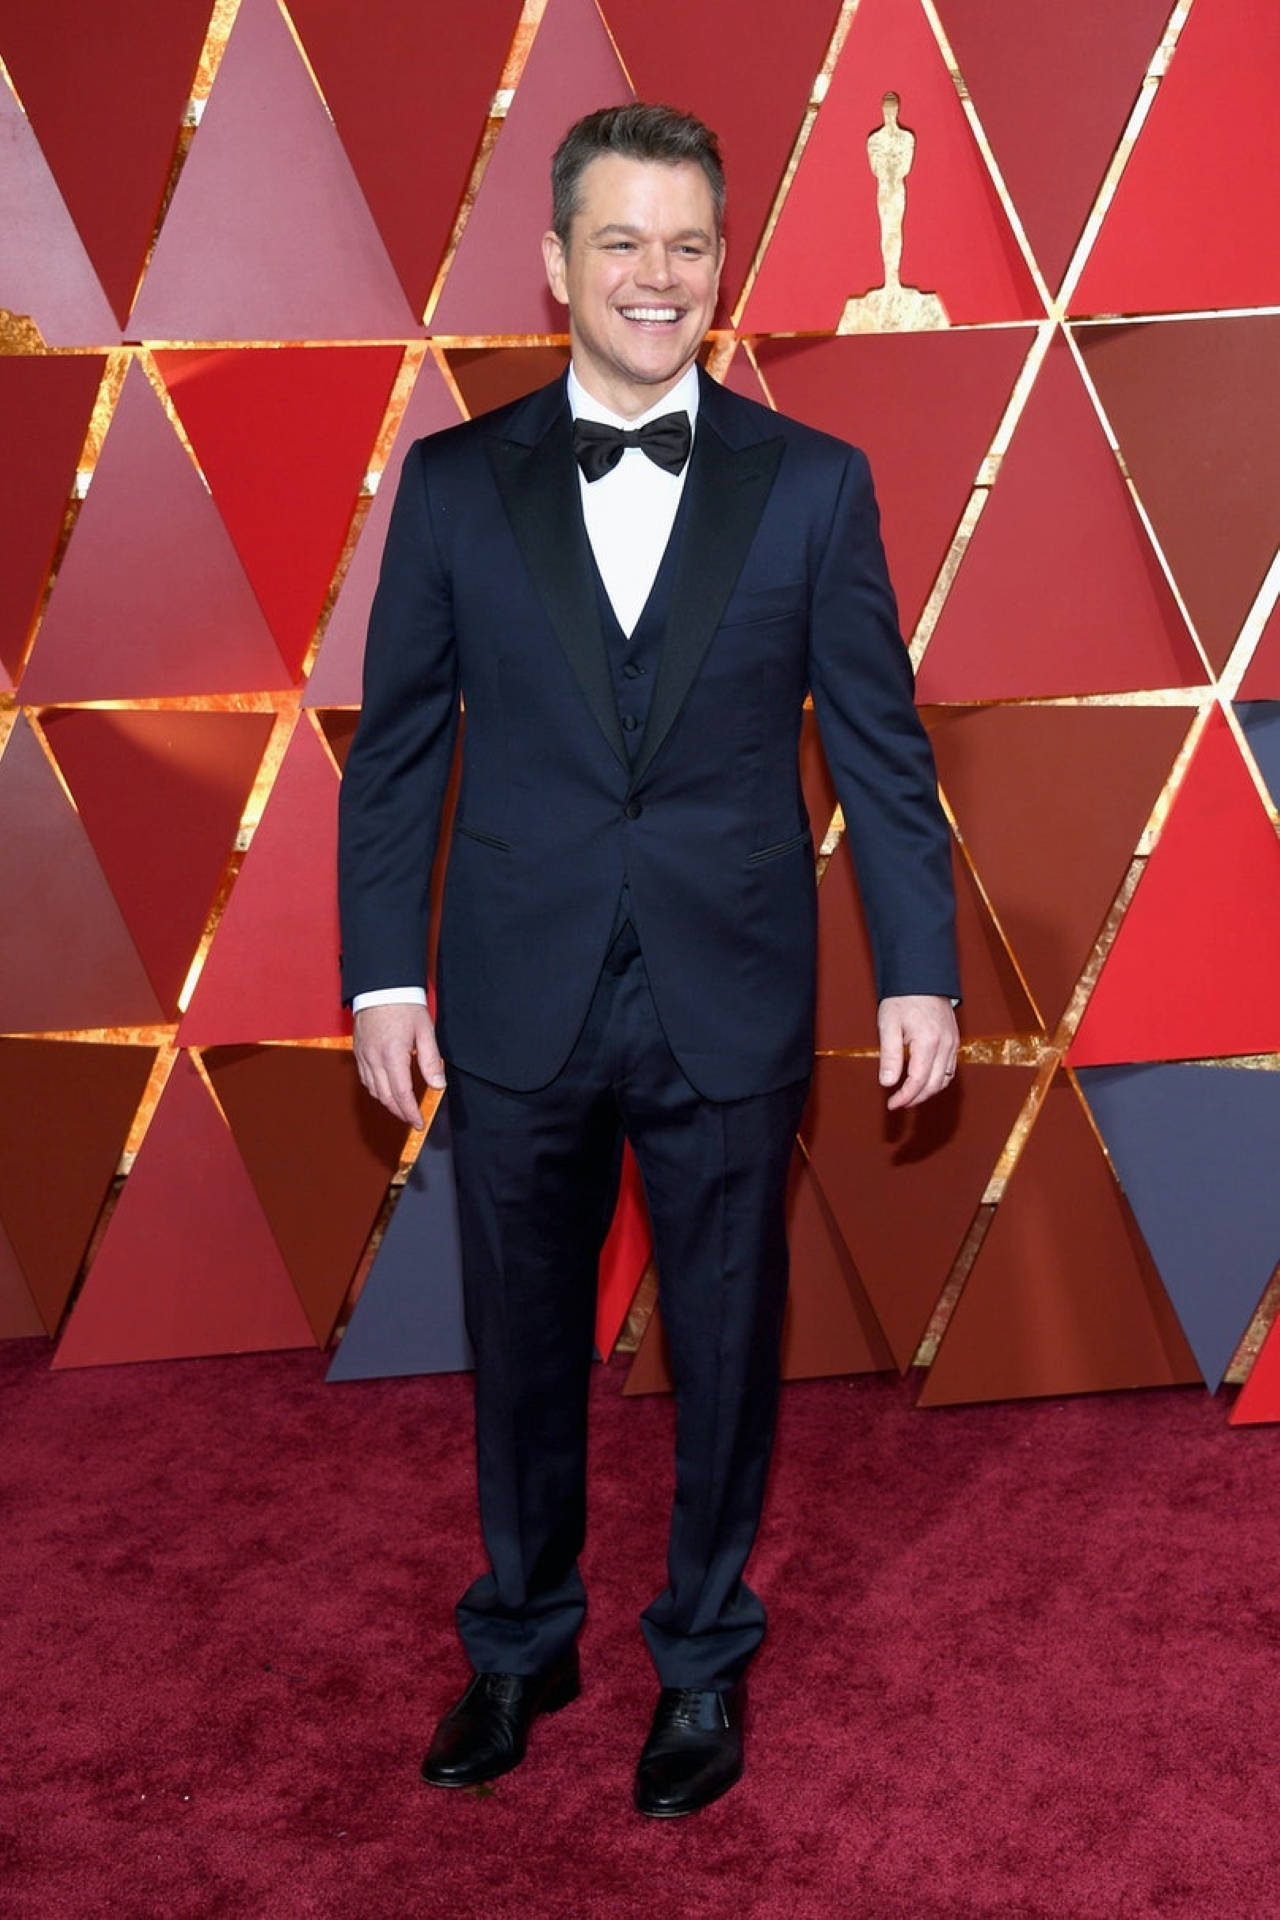 Matt Damon At The Oscars 2017